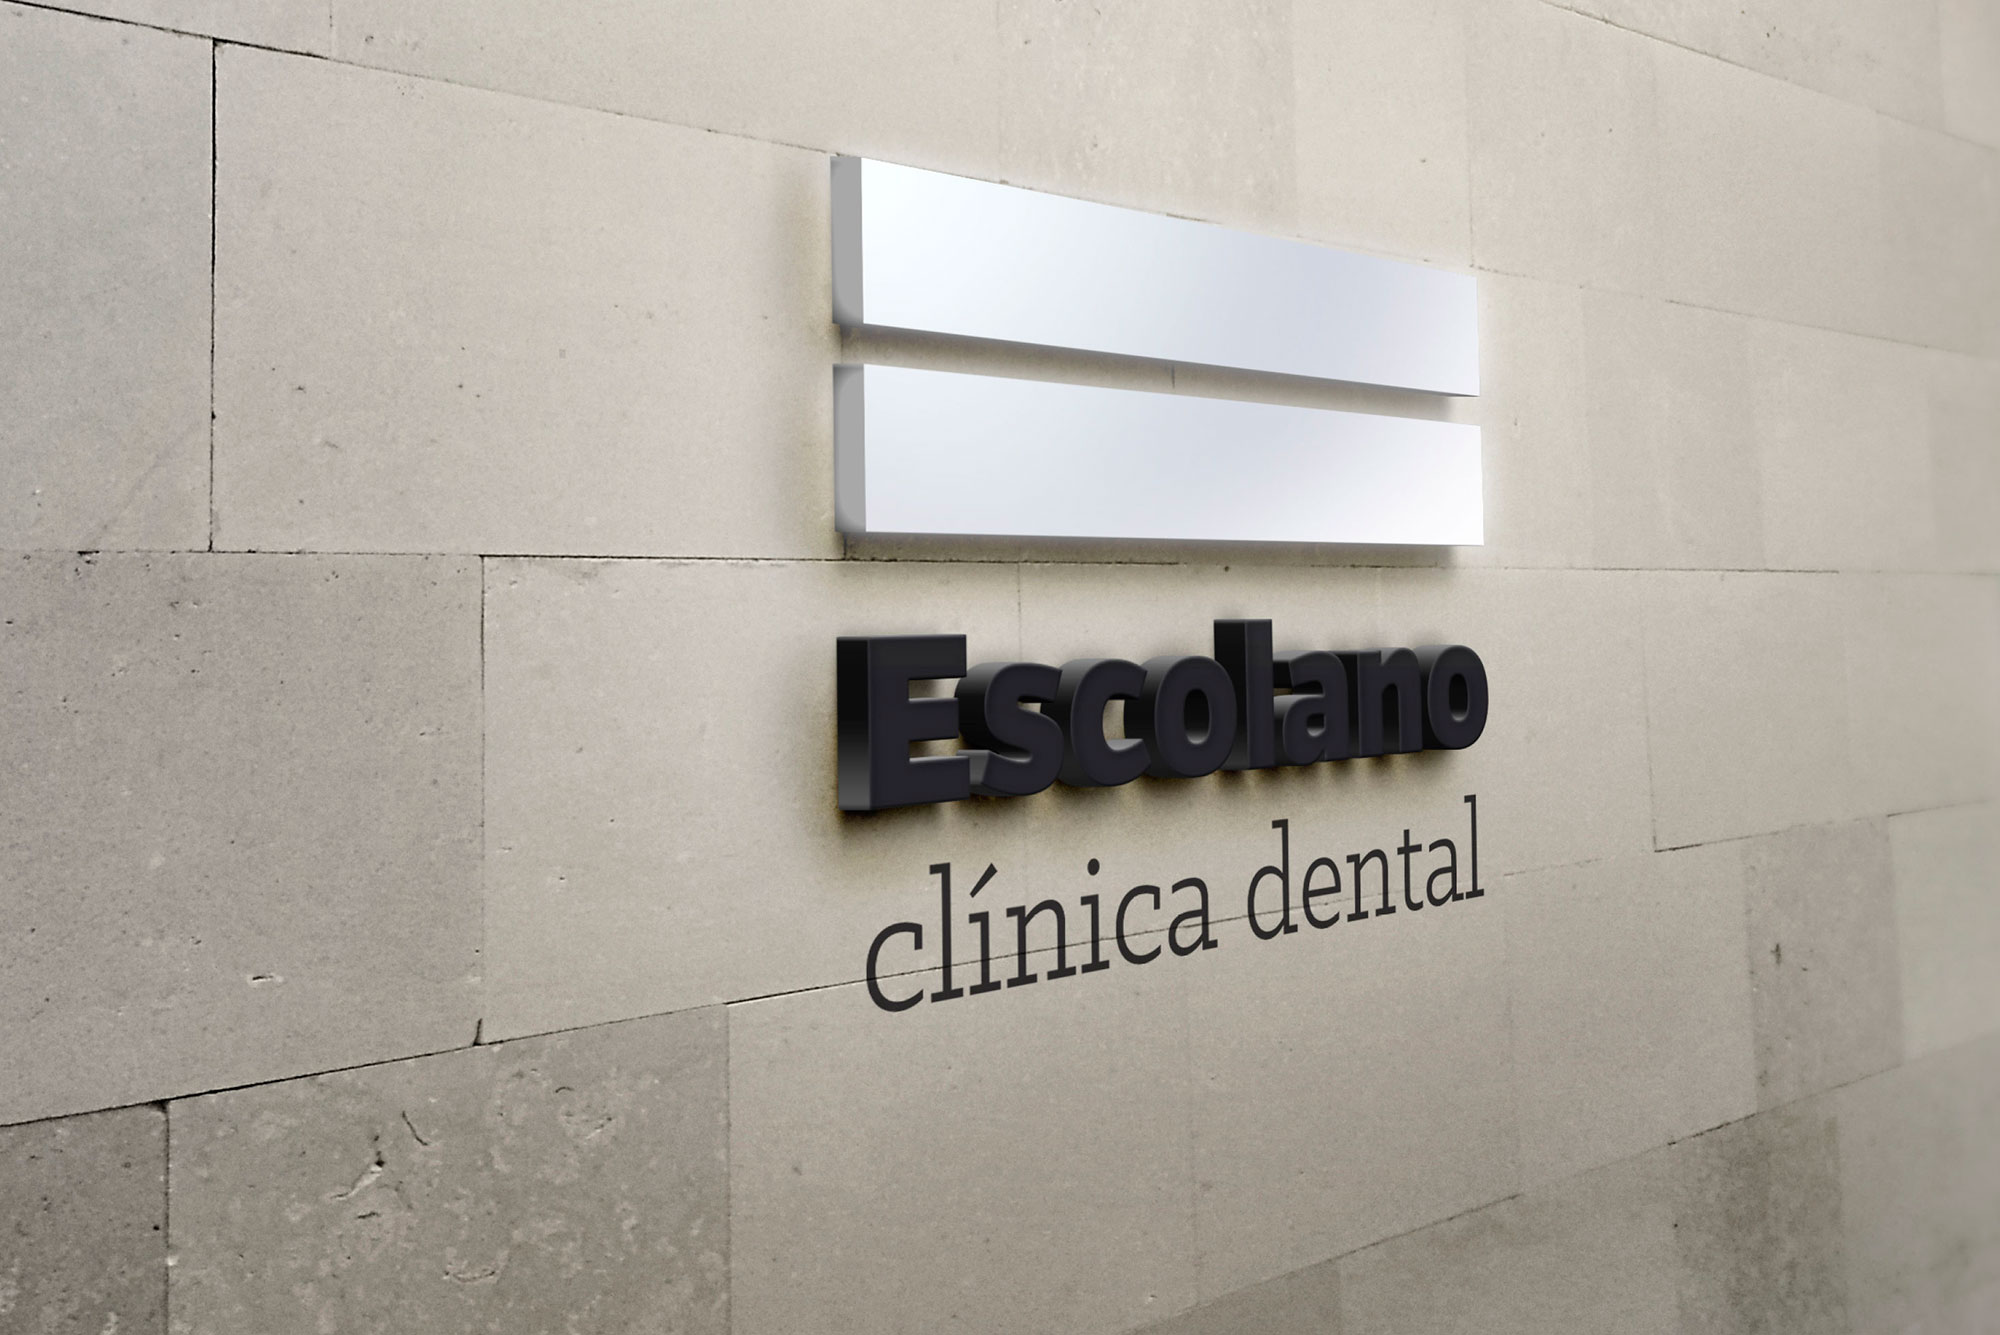 identidad corporativa branding clinica dental gandia interioristas valencia logotipo en fachada